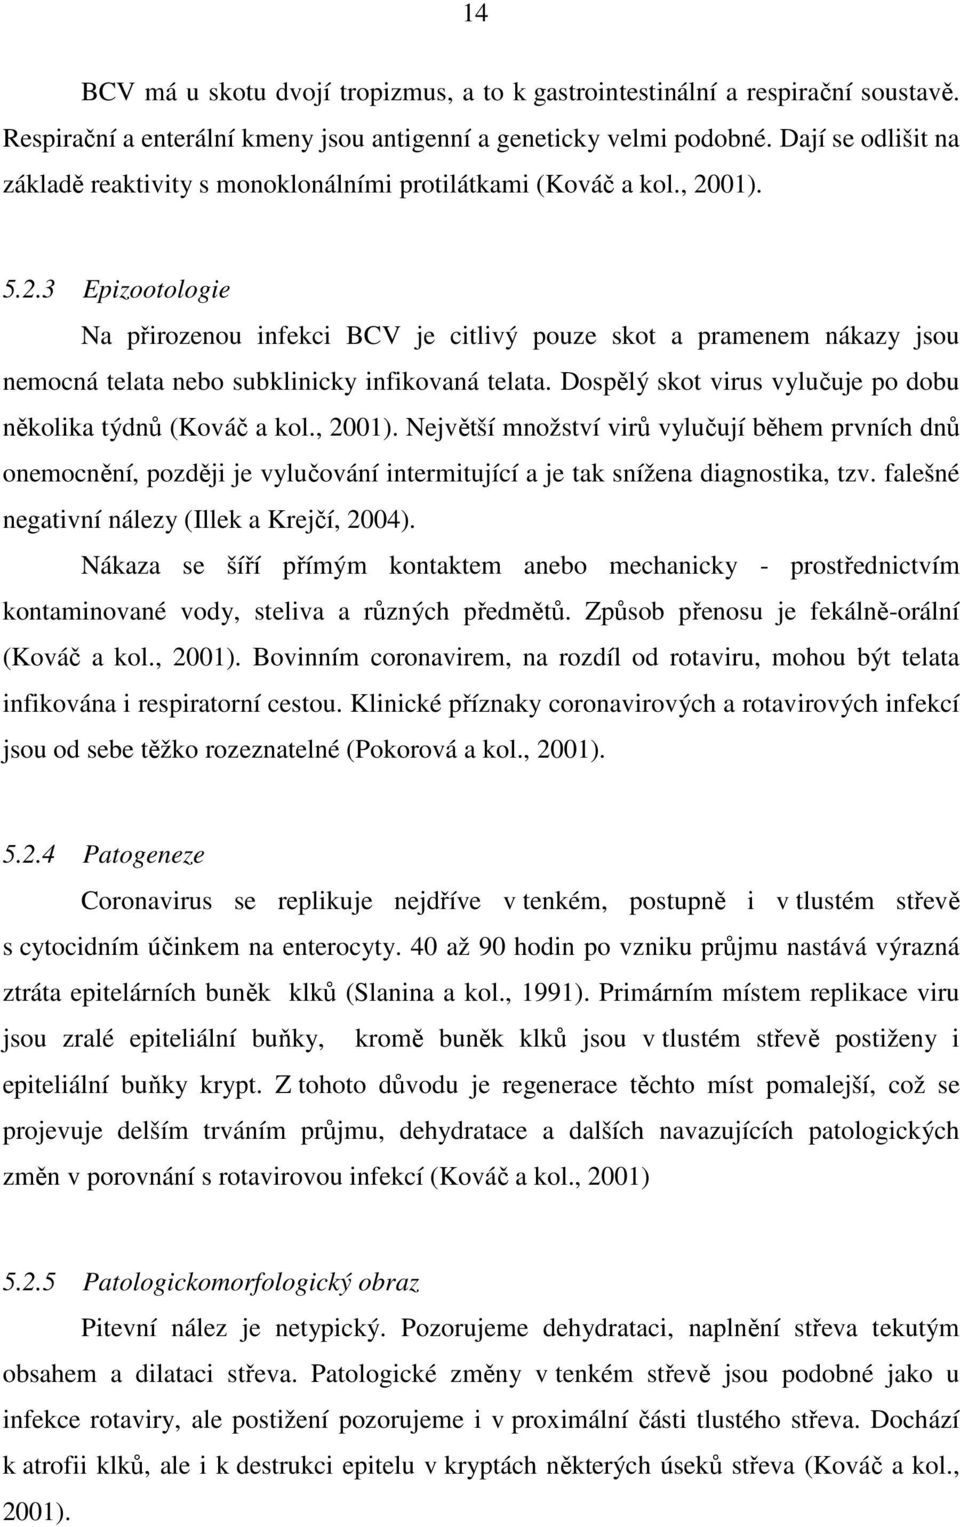 01). 5.2.3 Epizootologie Na přirozenou infekci BCV je citlivý pouze skot a pramenem nákazy jsou nemocná telata nebo subklinicky infikovaná telata.